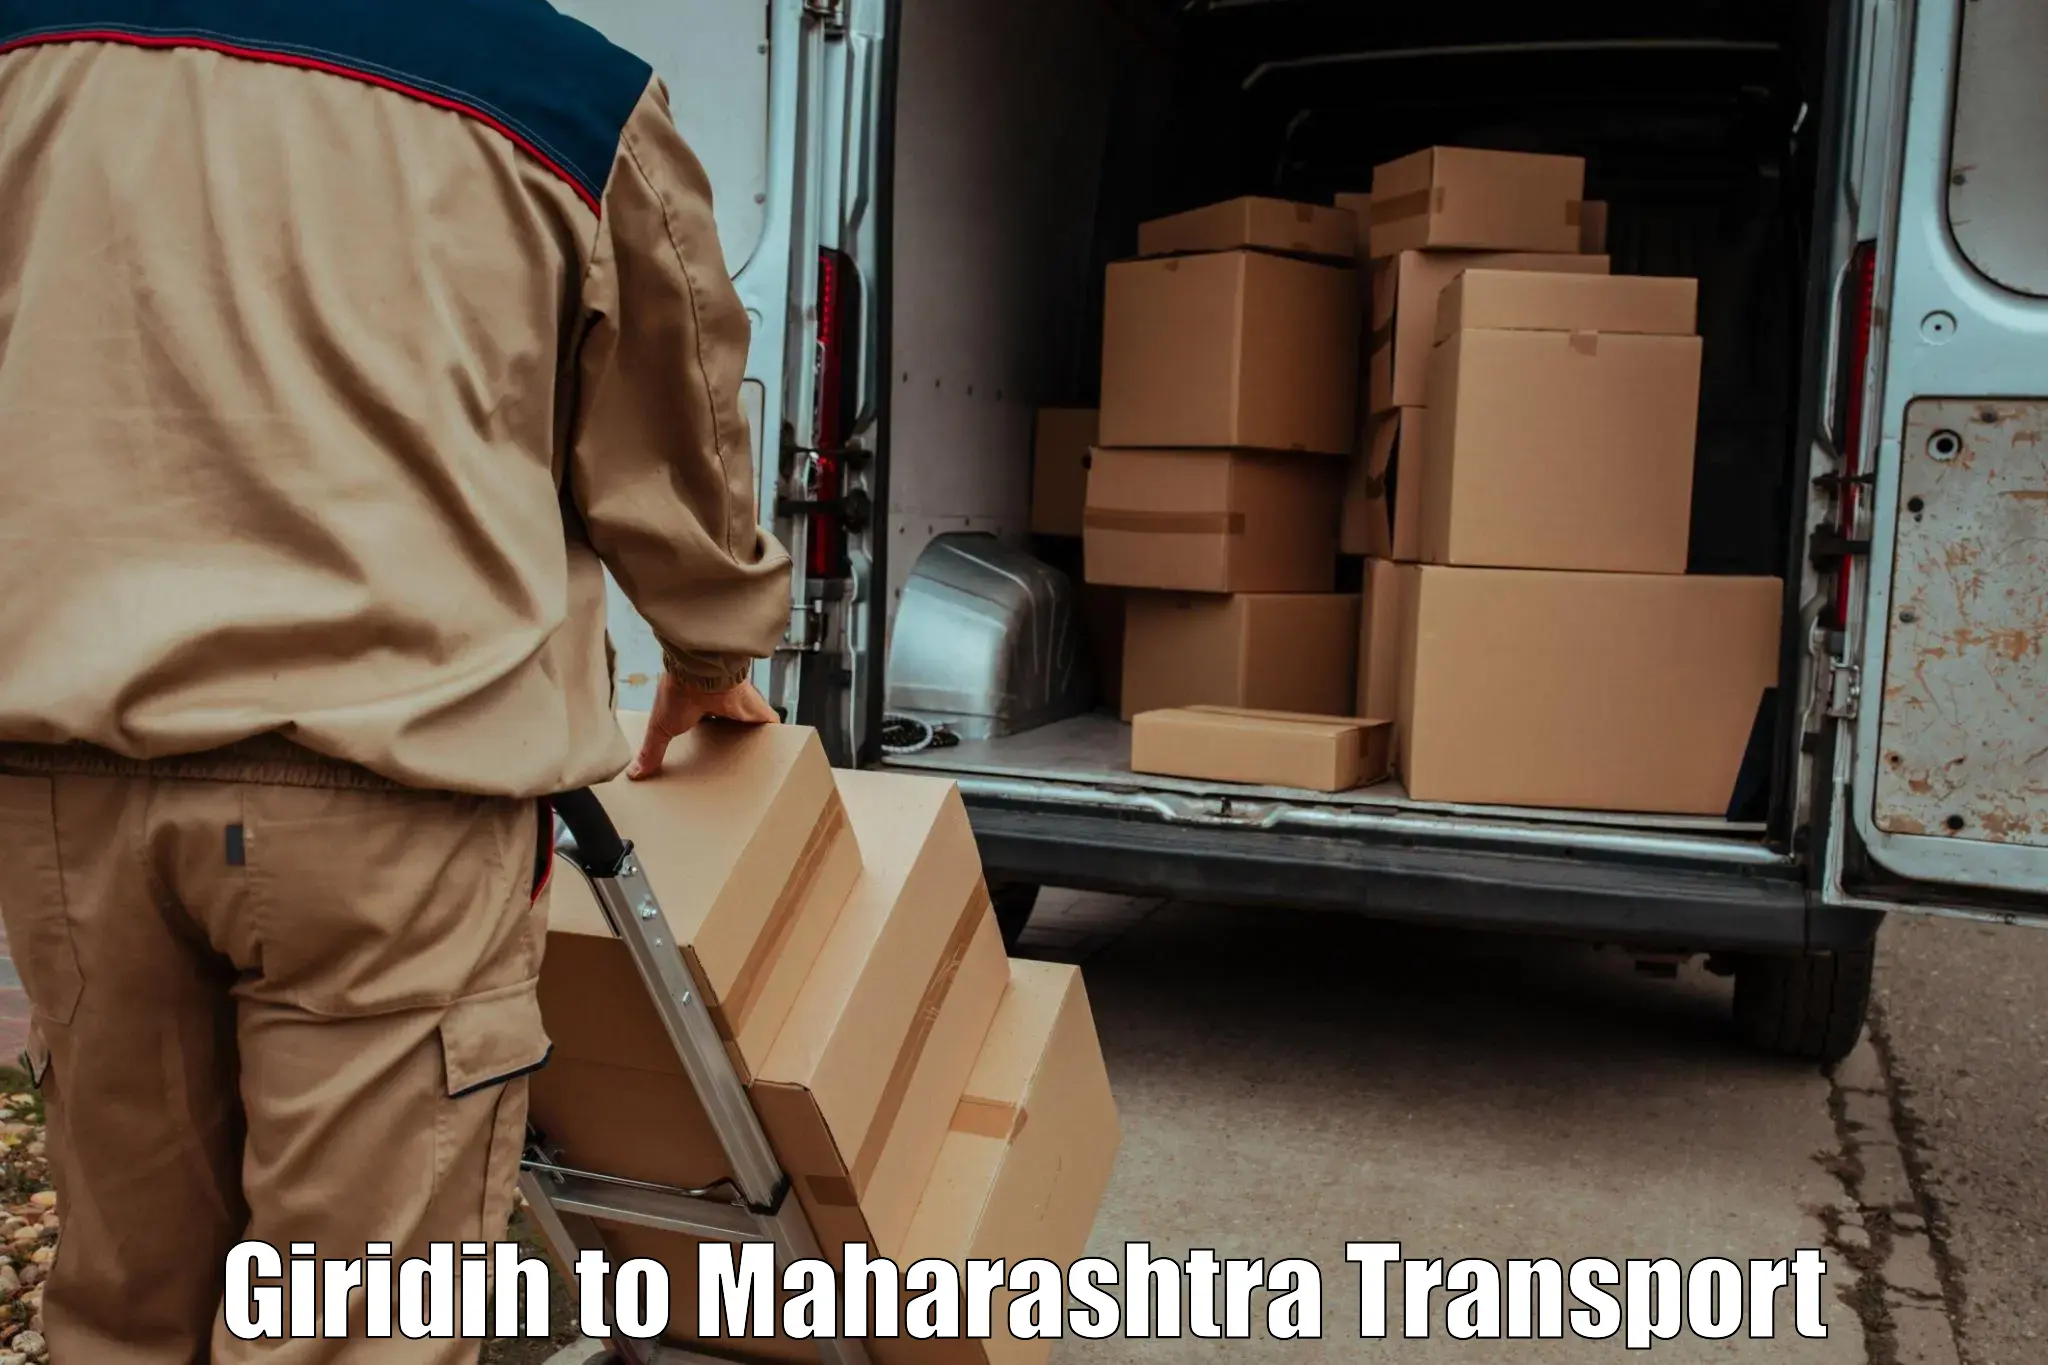 Parcel transport services Giridih to Pandharkawada